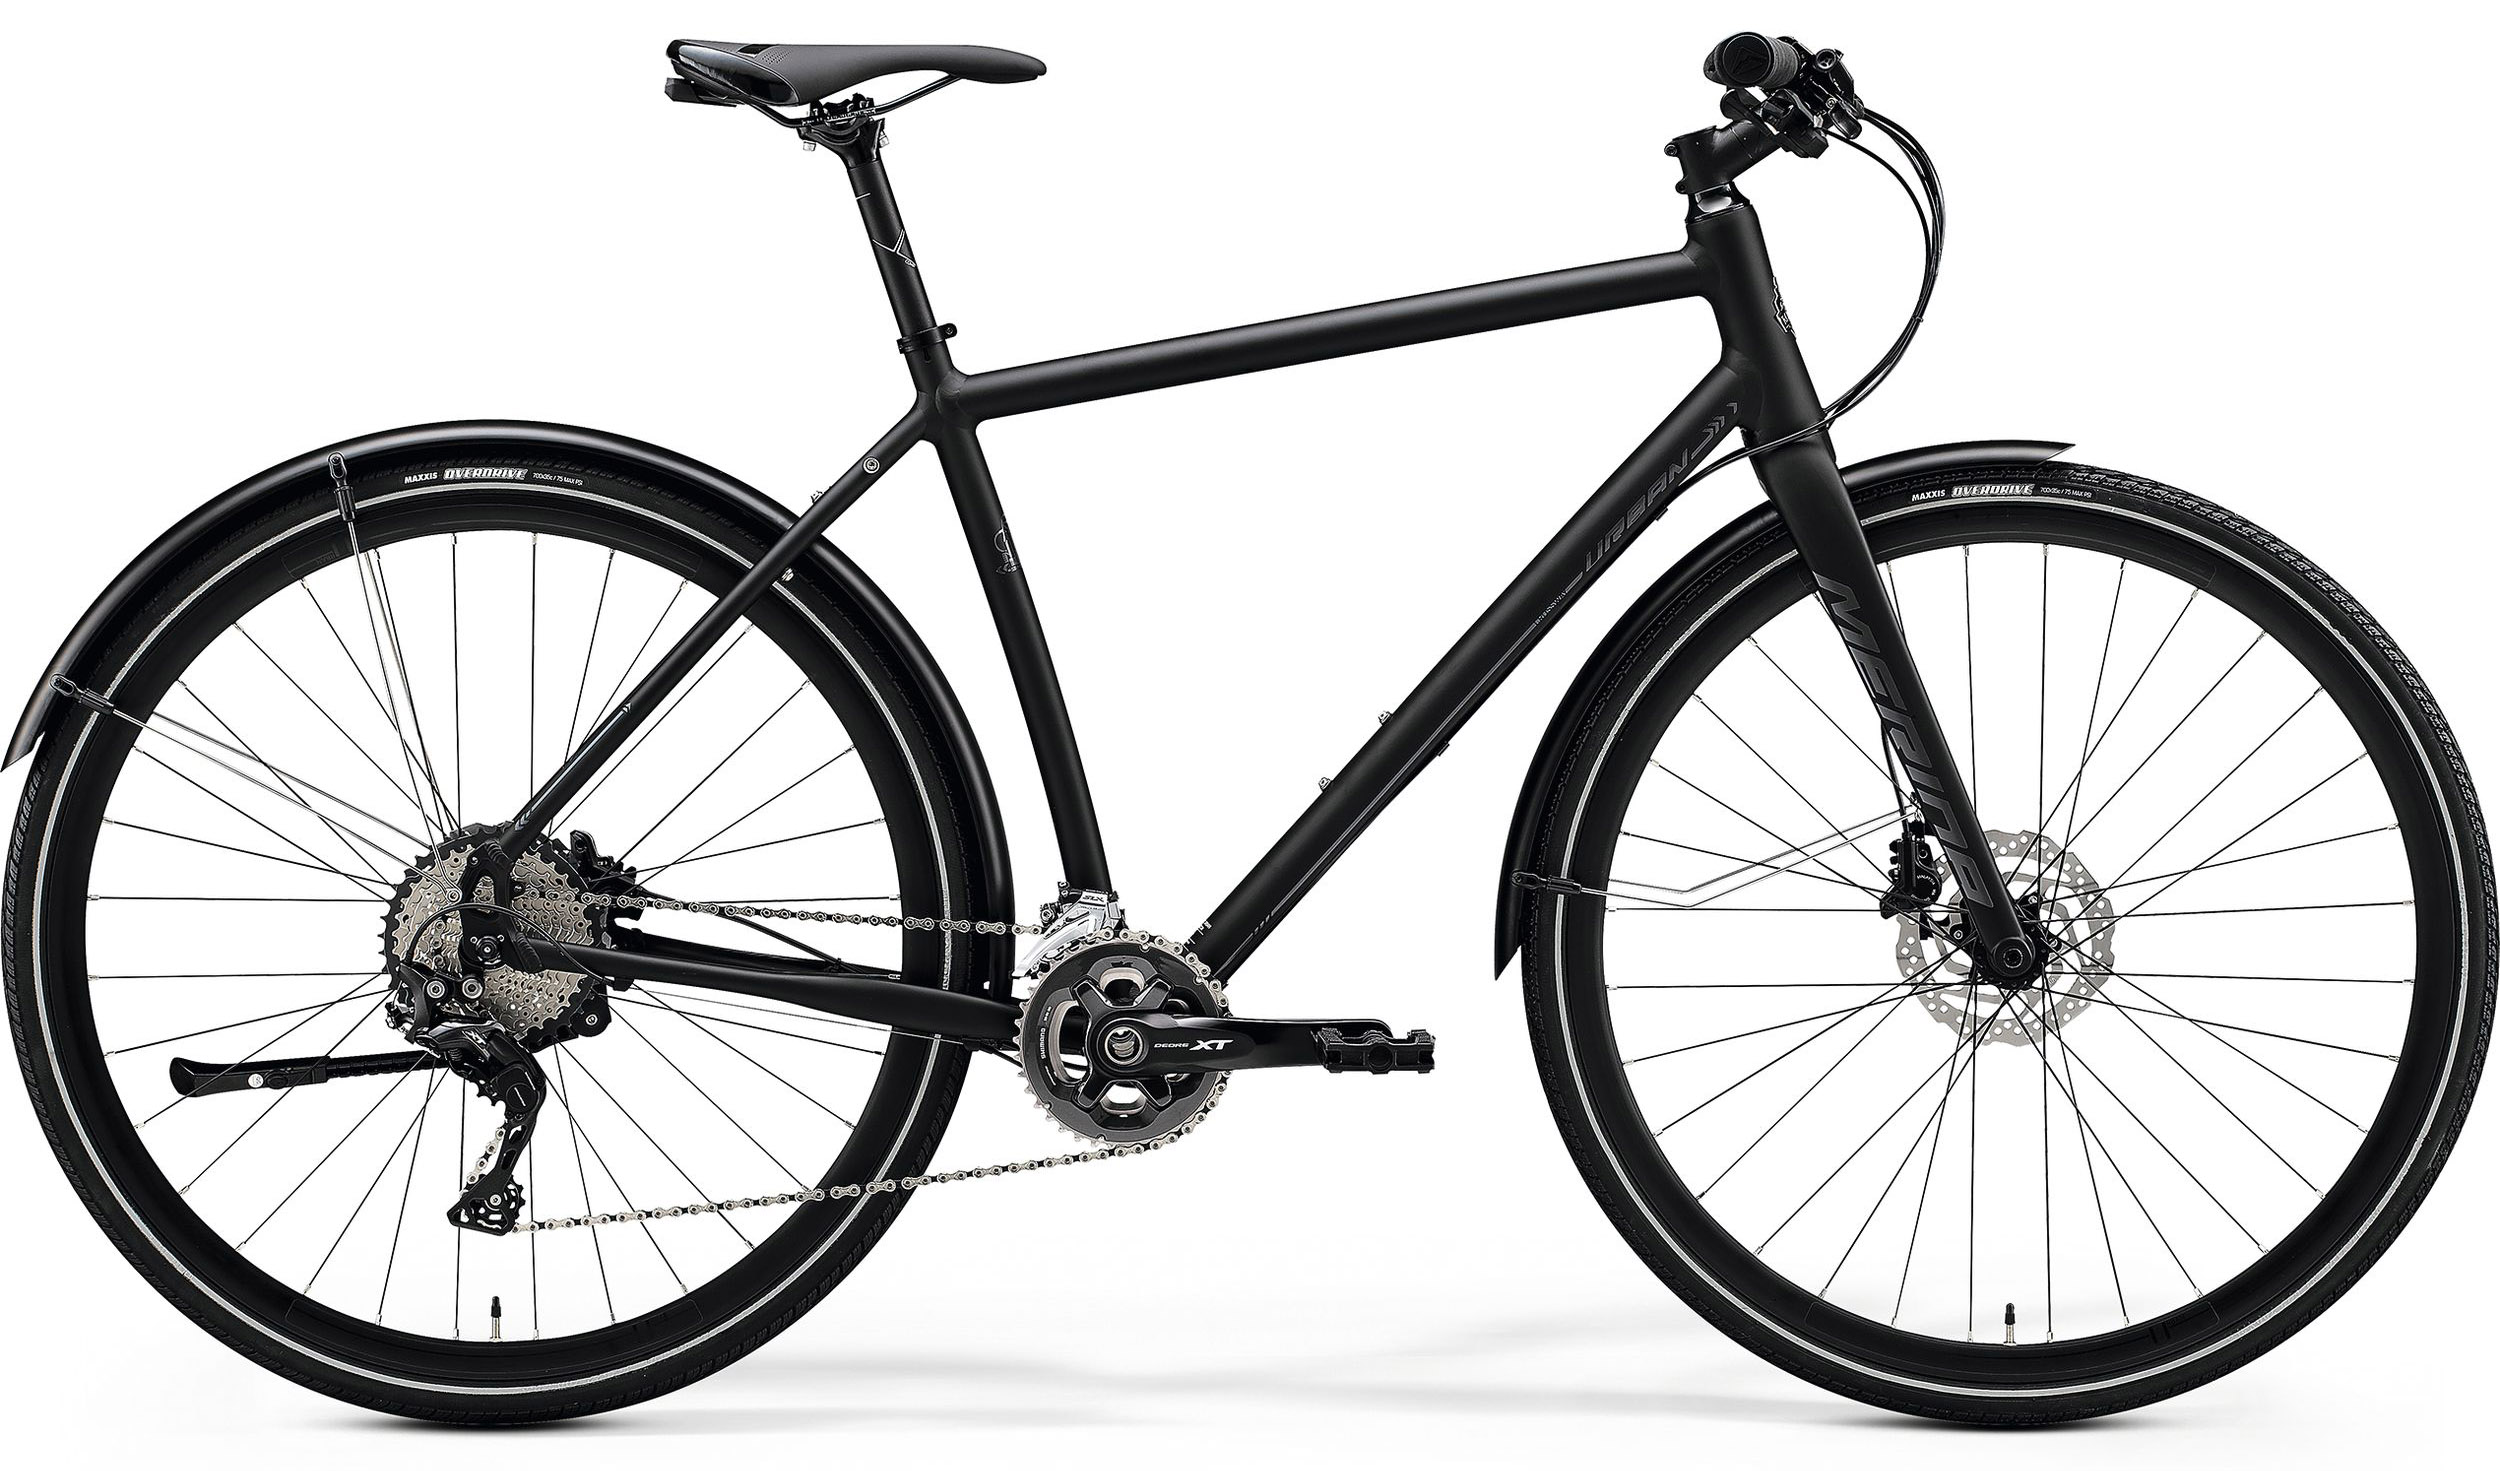  Отзывы о Городском велосипеде Merida Crossway Urban XT Edition 2020